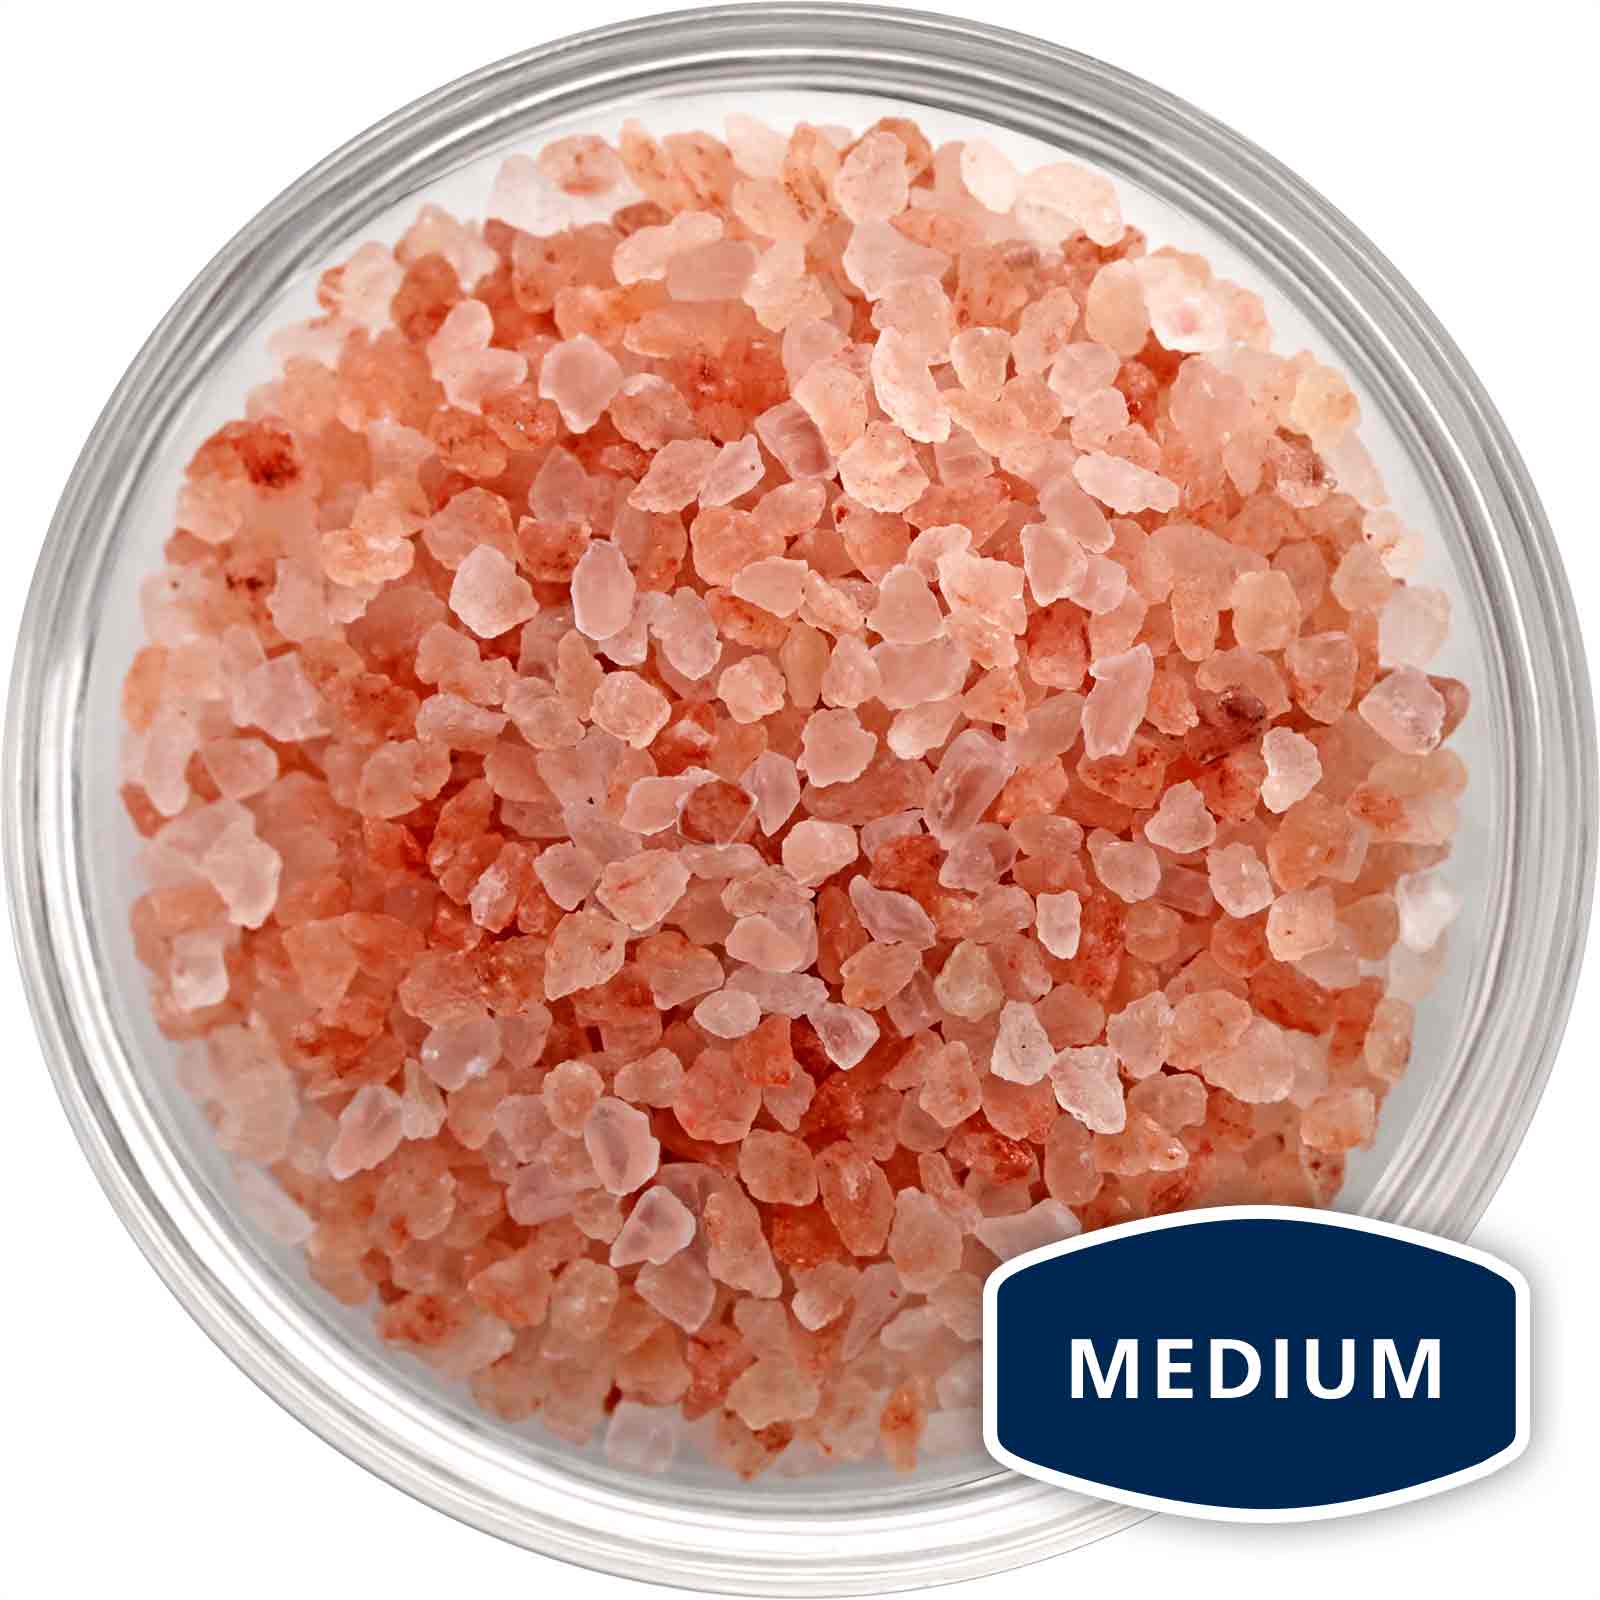 Medium grain Himalayan salt in a bowl